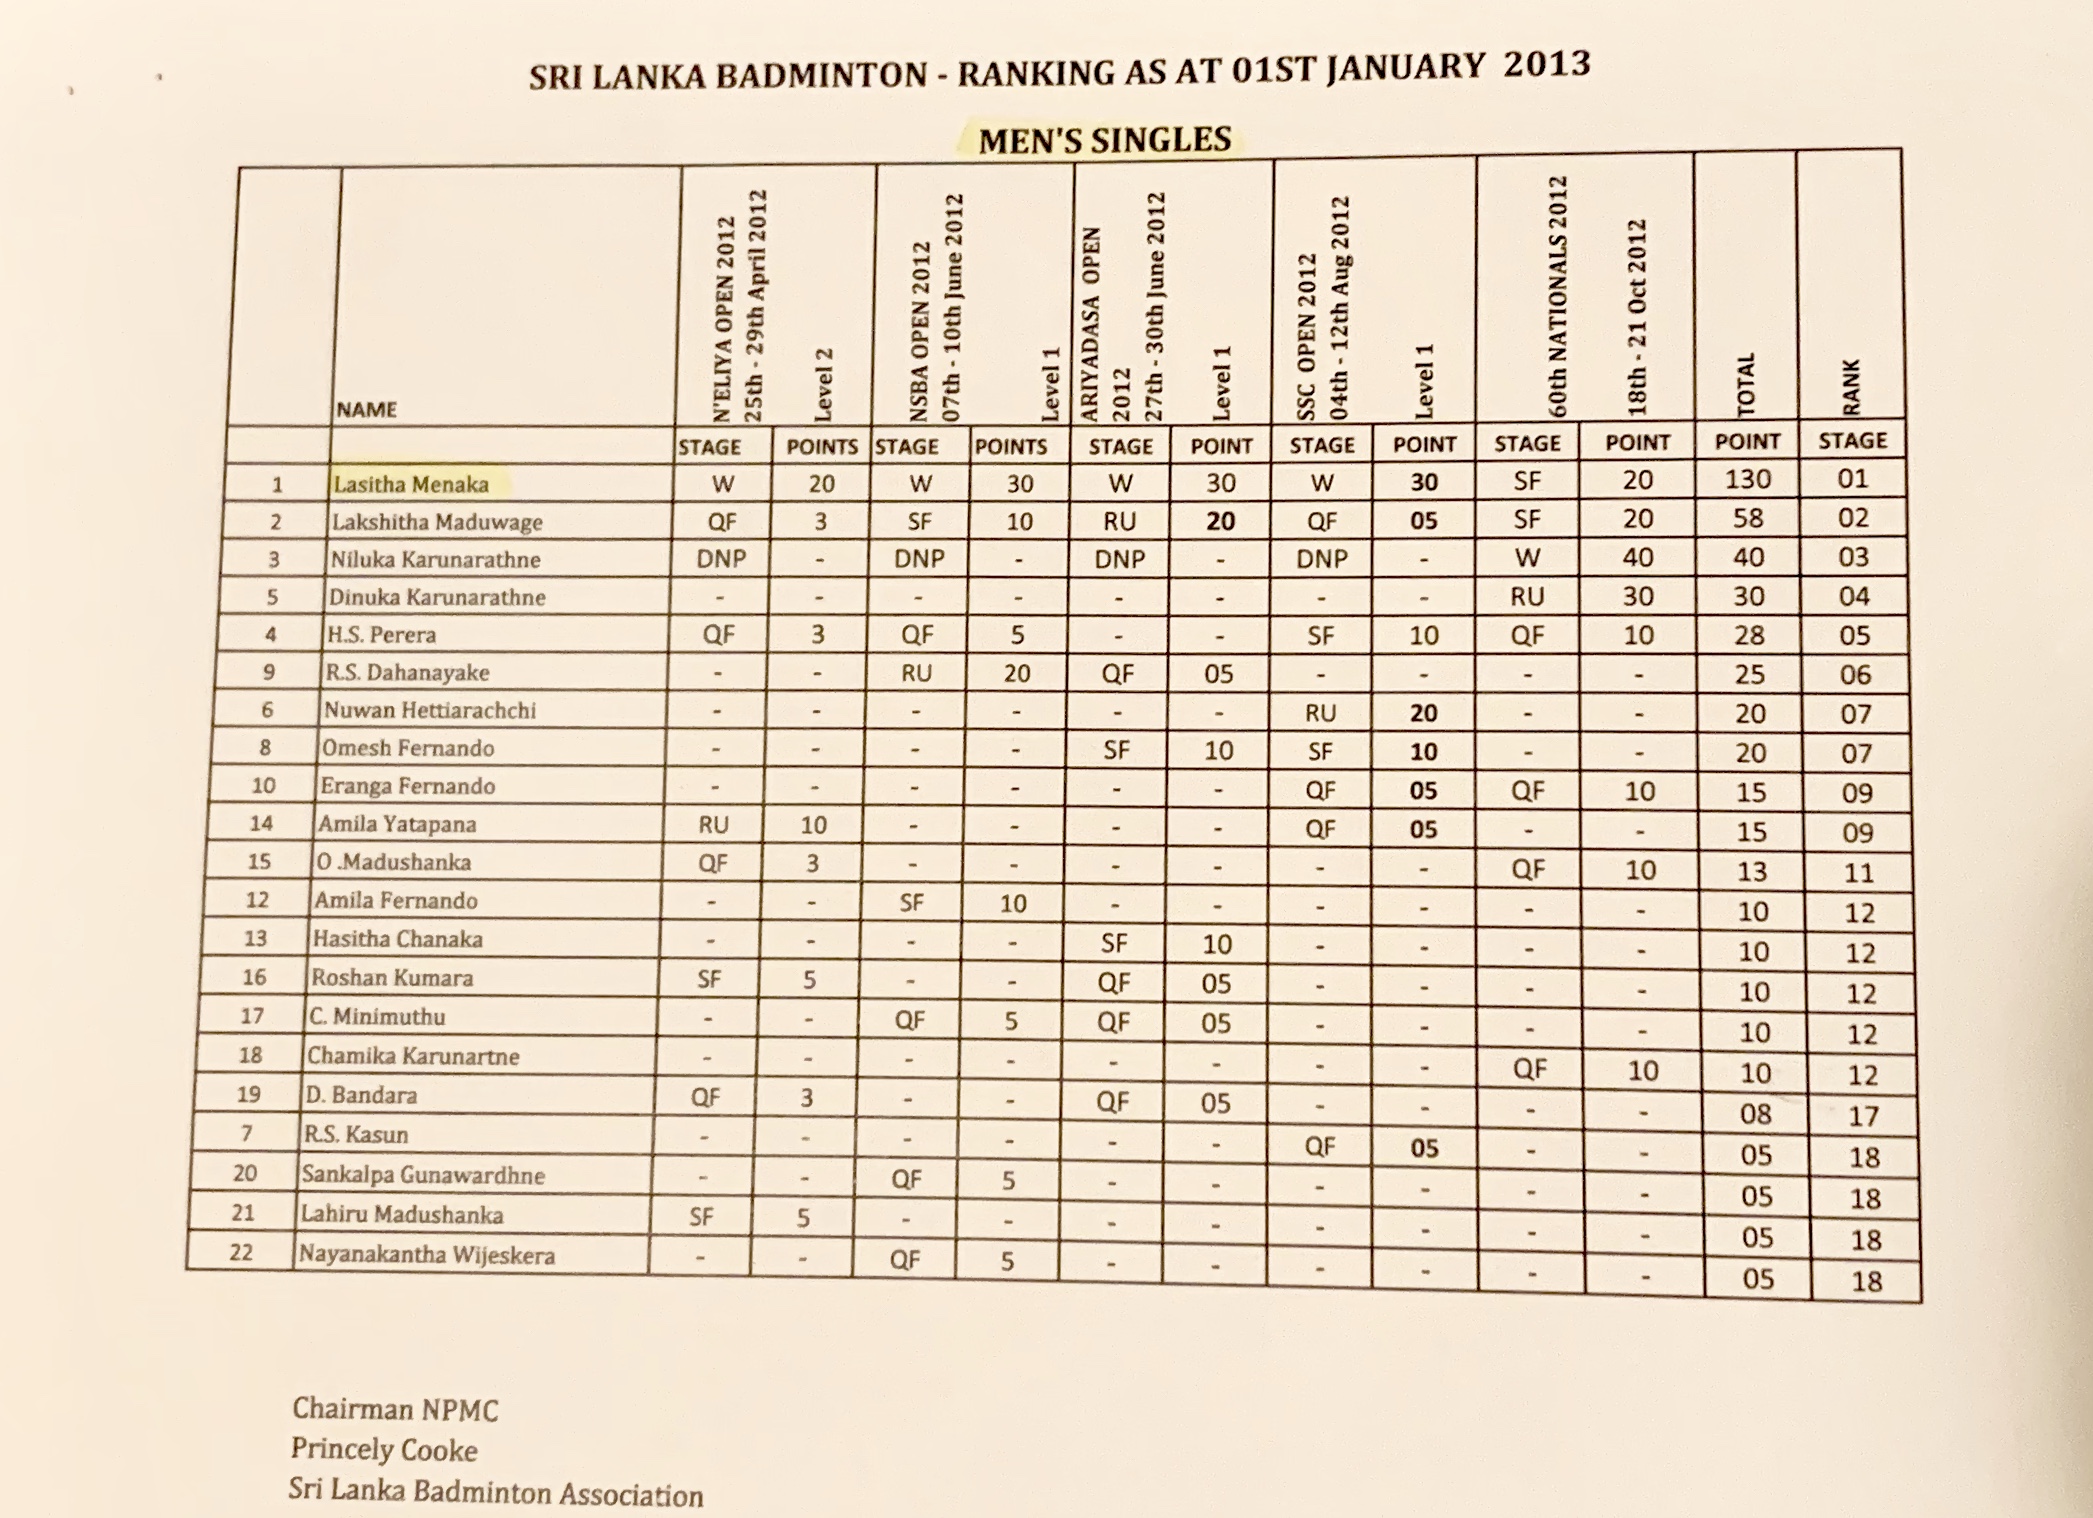 Nations rankings of Men’s Singles Sri Lanka